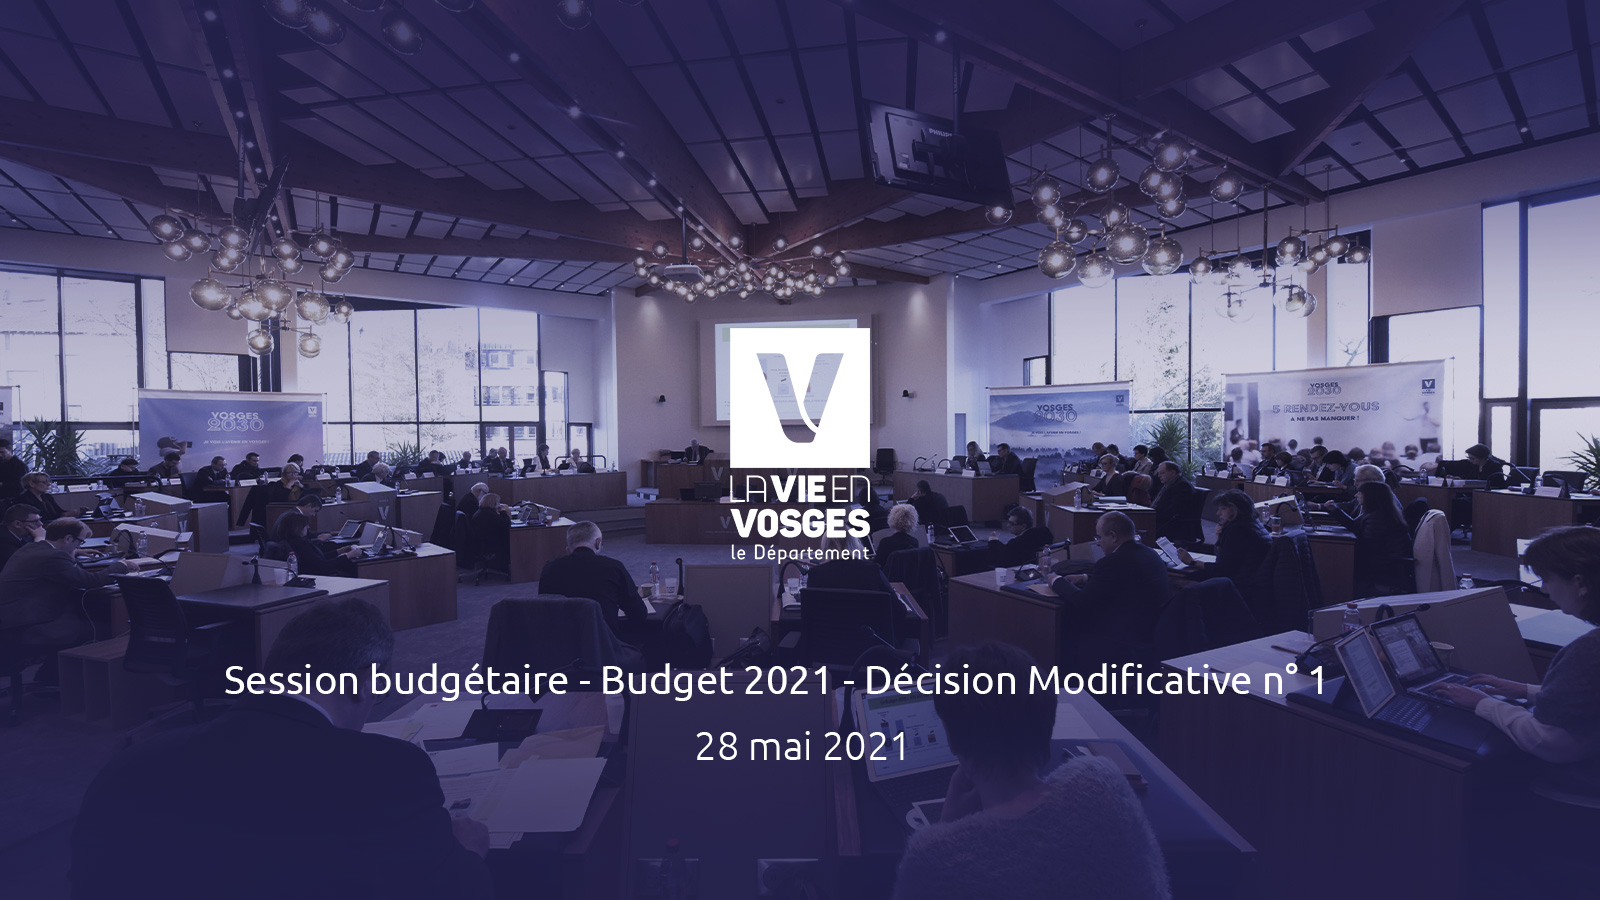 Session budgétaire - Budget 2021 - Décision Modificative n° 1